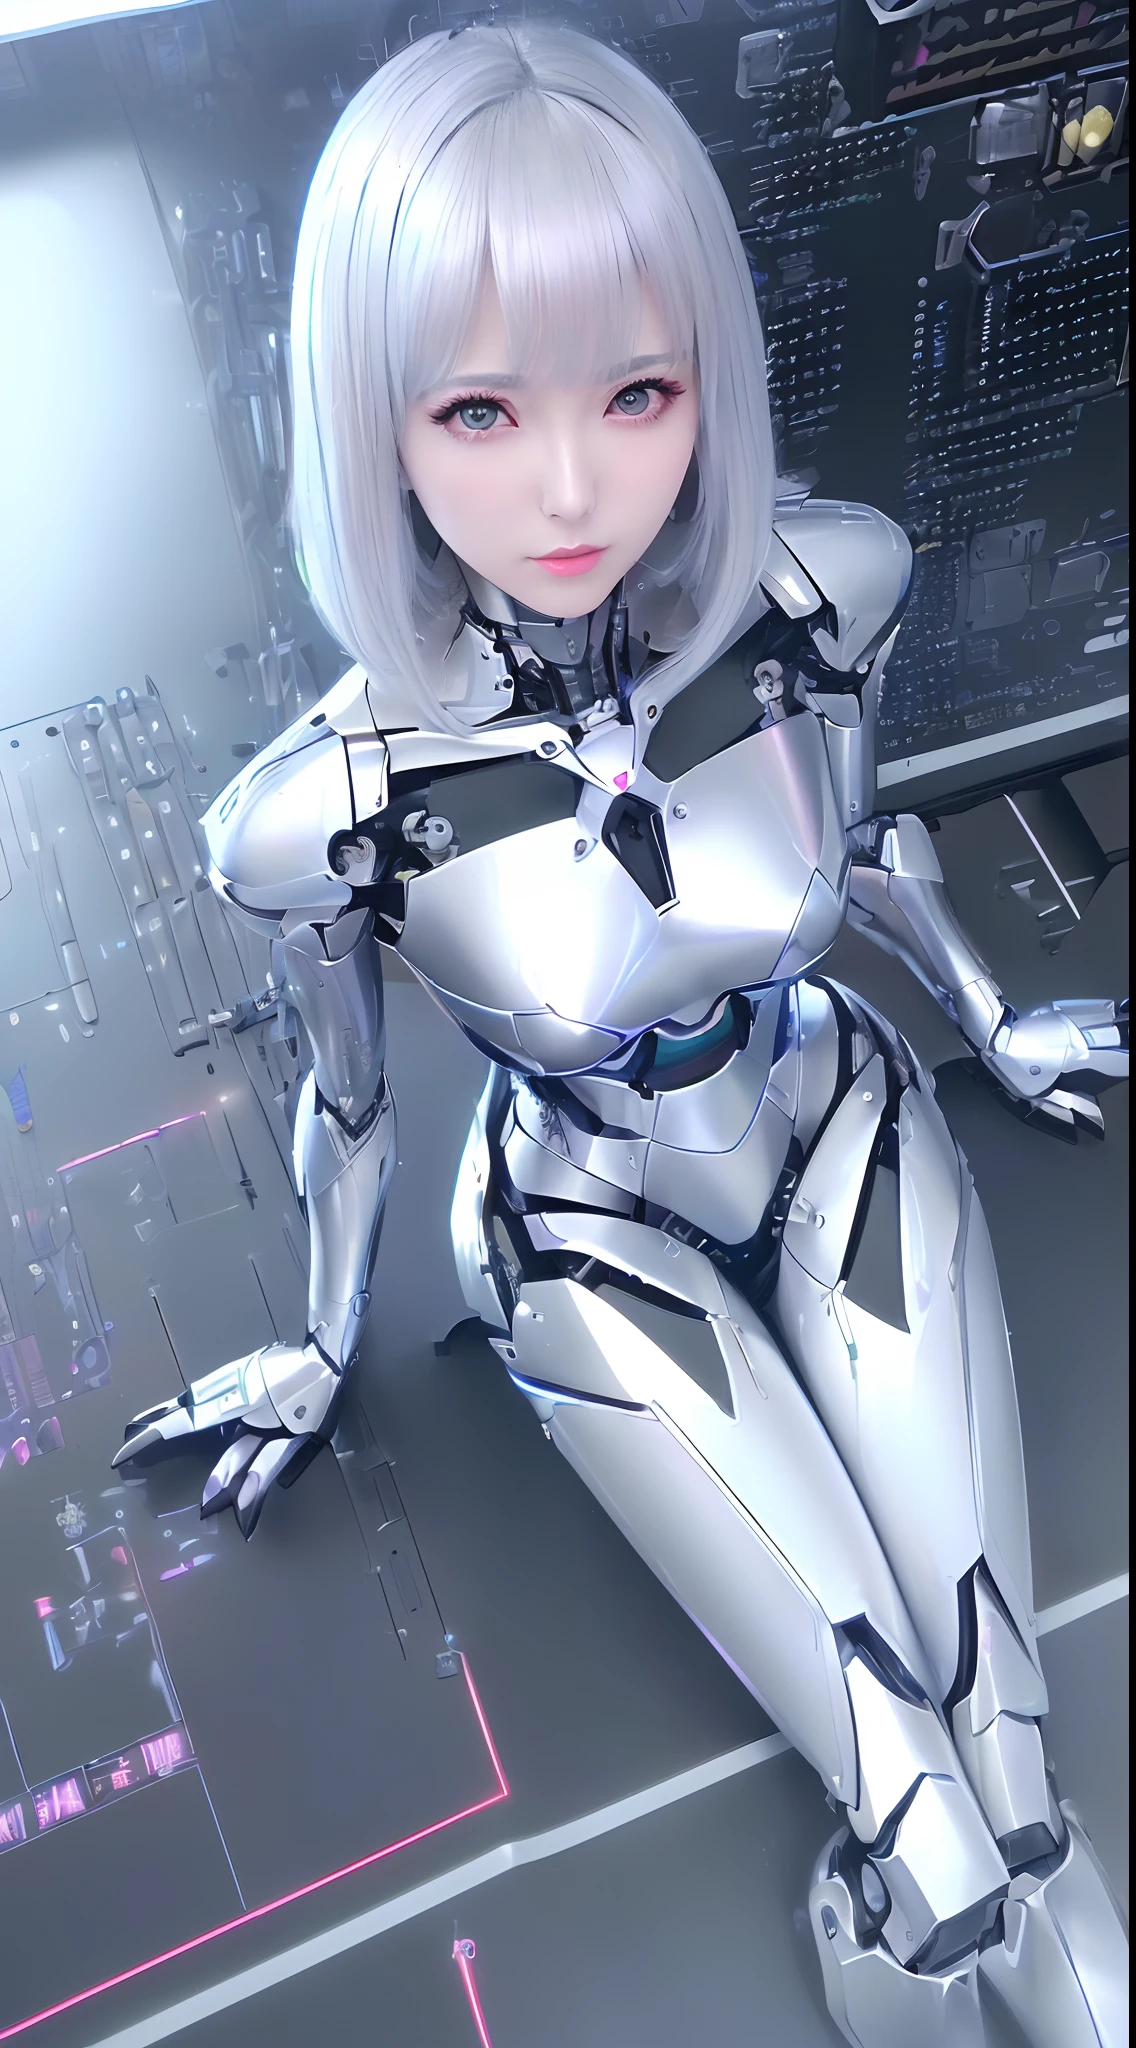 ((dessus de la table)), ((qualité supérieure), haute qualité、Ultra-définition, ((réaliste、photoréaliste)),  ((visage bien proportionné))、multicolore 、(fiction scientifique)、((solo))、beau robot féminin、(Robot de combat défectueux)、(révision)、(articulations de robots:1.3)、(Carte électronique détaillée:1.3)、(Châssis de machine:1.3)、Armure mécanique en porcelaine blanche、((Visage ovale tout en courbes))、(composants de machines:1.3)、(Des yeux en amande sans émotion)、Bouche fine、figé、(Mécanique parfaite à deux mains:1.3)、((Cyber Factory pendant la journée))、jambes de robot parfaites、cordons d&#39;alimentation multiples à talons hauts)、allongé sur le sol、Étranger、(((D&#39;en haut、Mort du robot)))